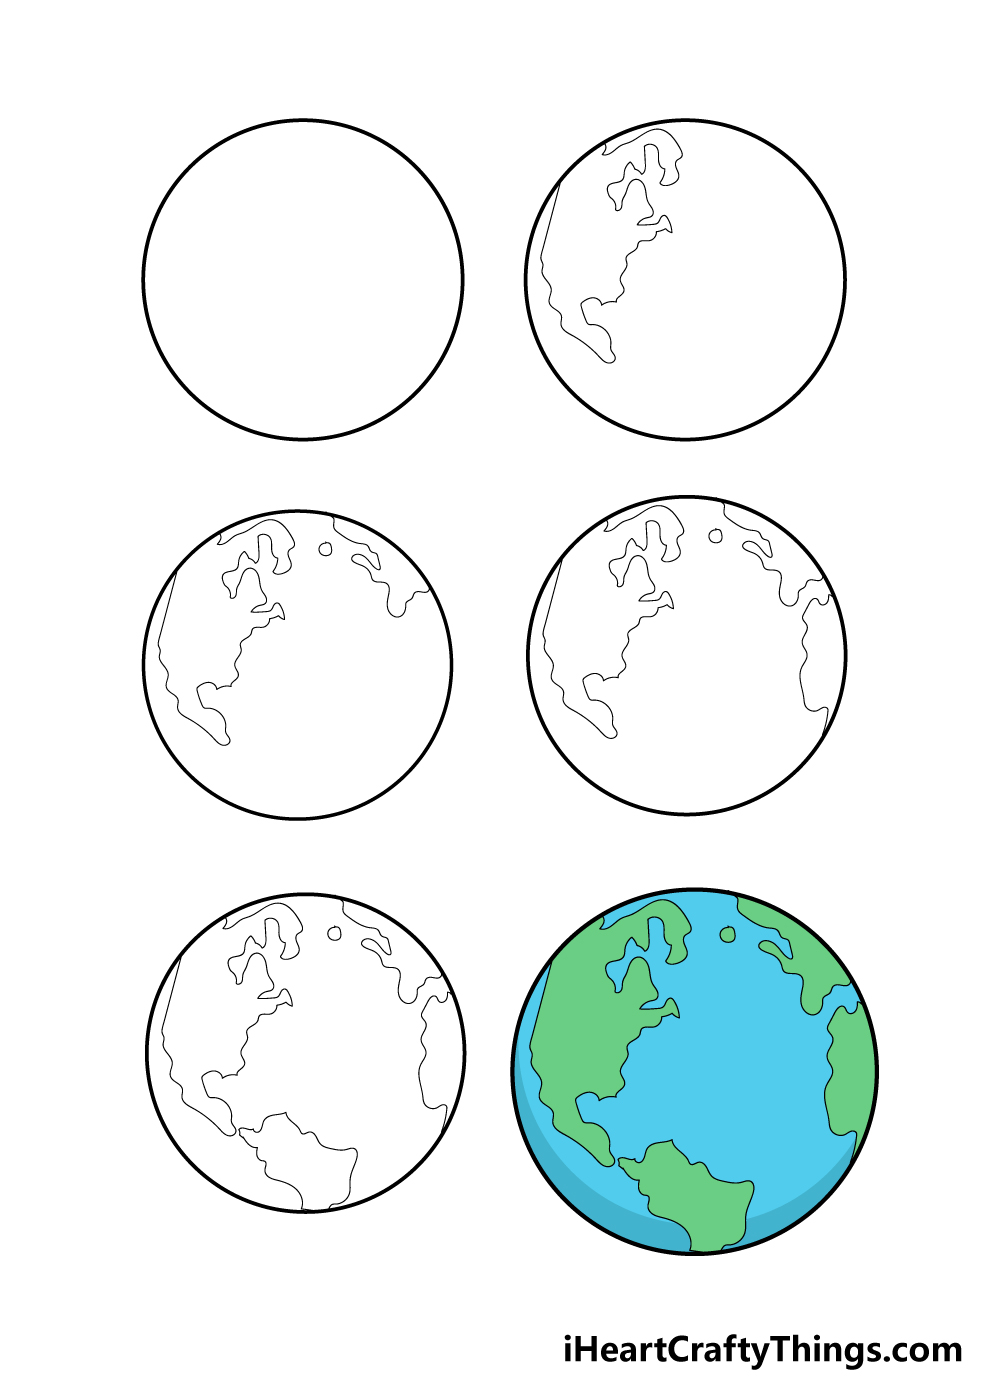 Earth in 6 steps - Hướng dẫn cách vẽ trái đất đơn giản với 6 bước cơ bản